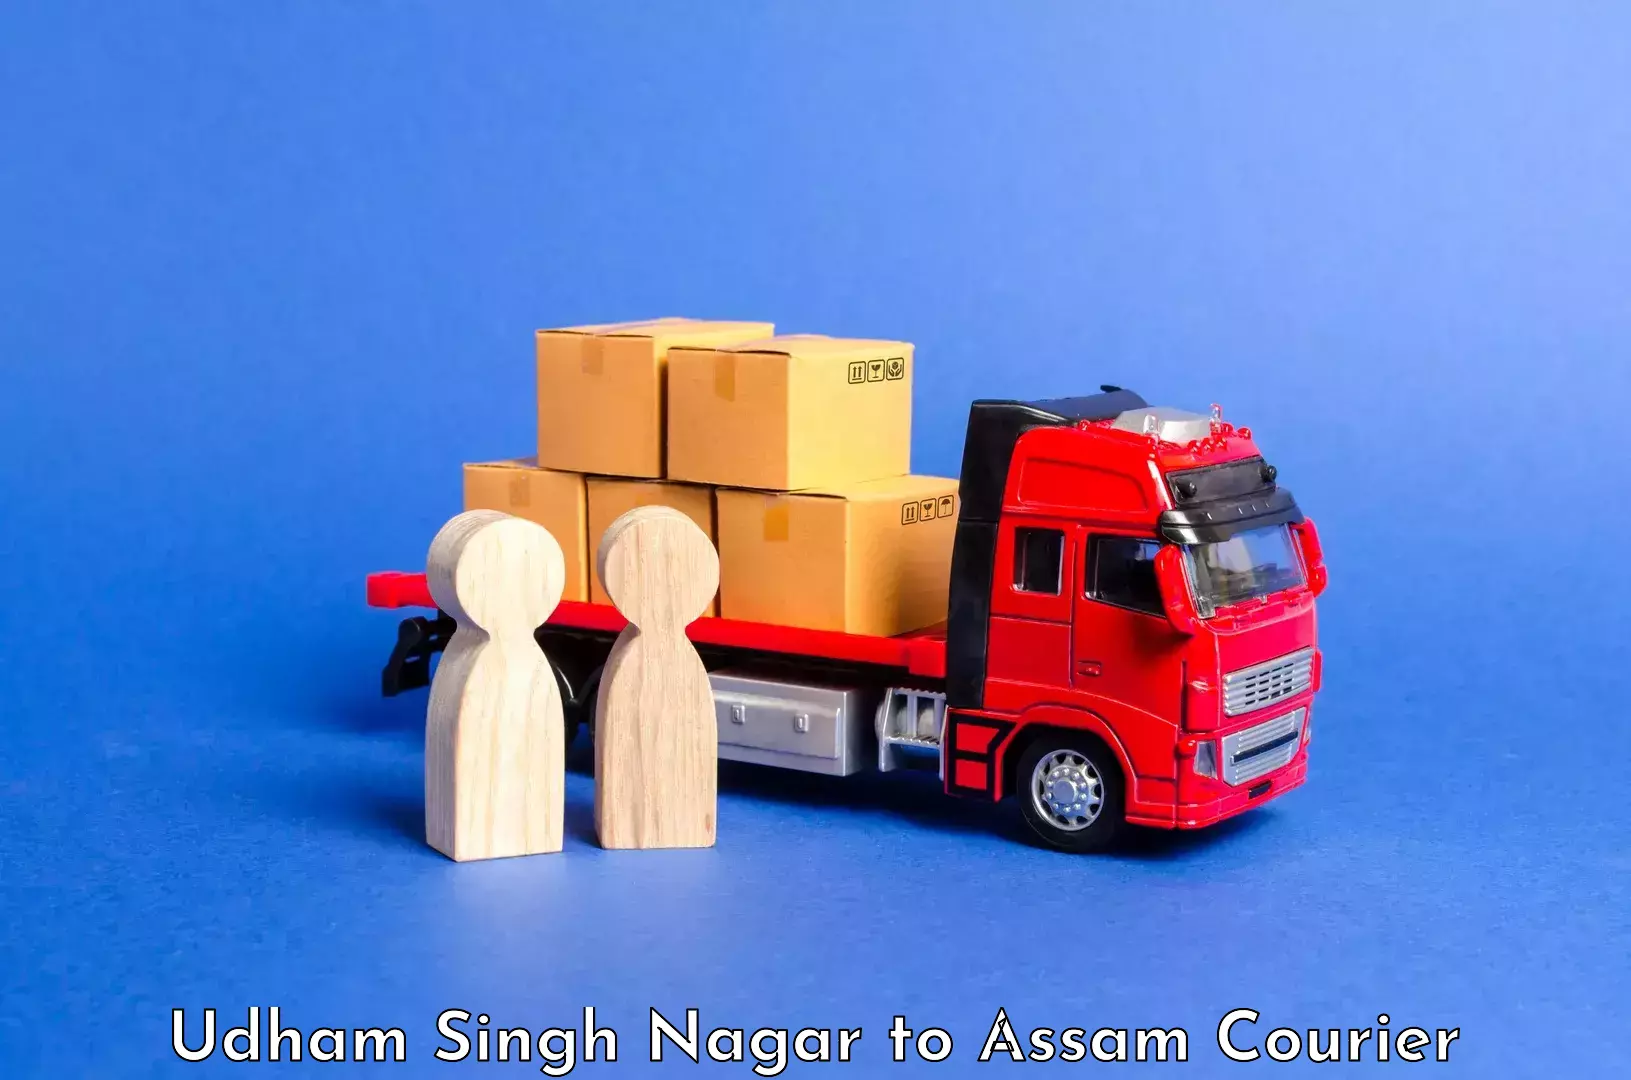 Luggage delivery system Udham Singh Nagar to Dergaon